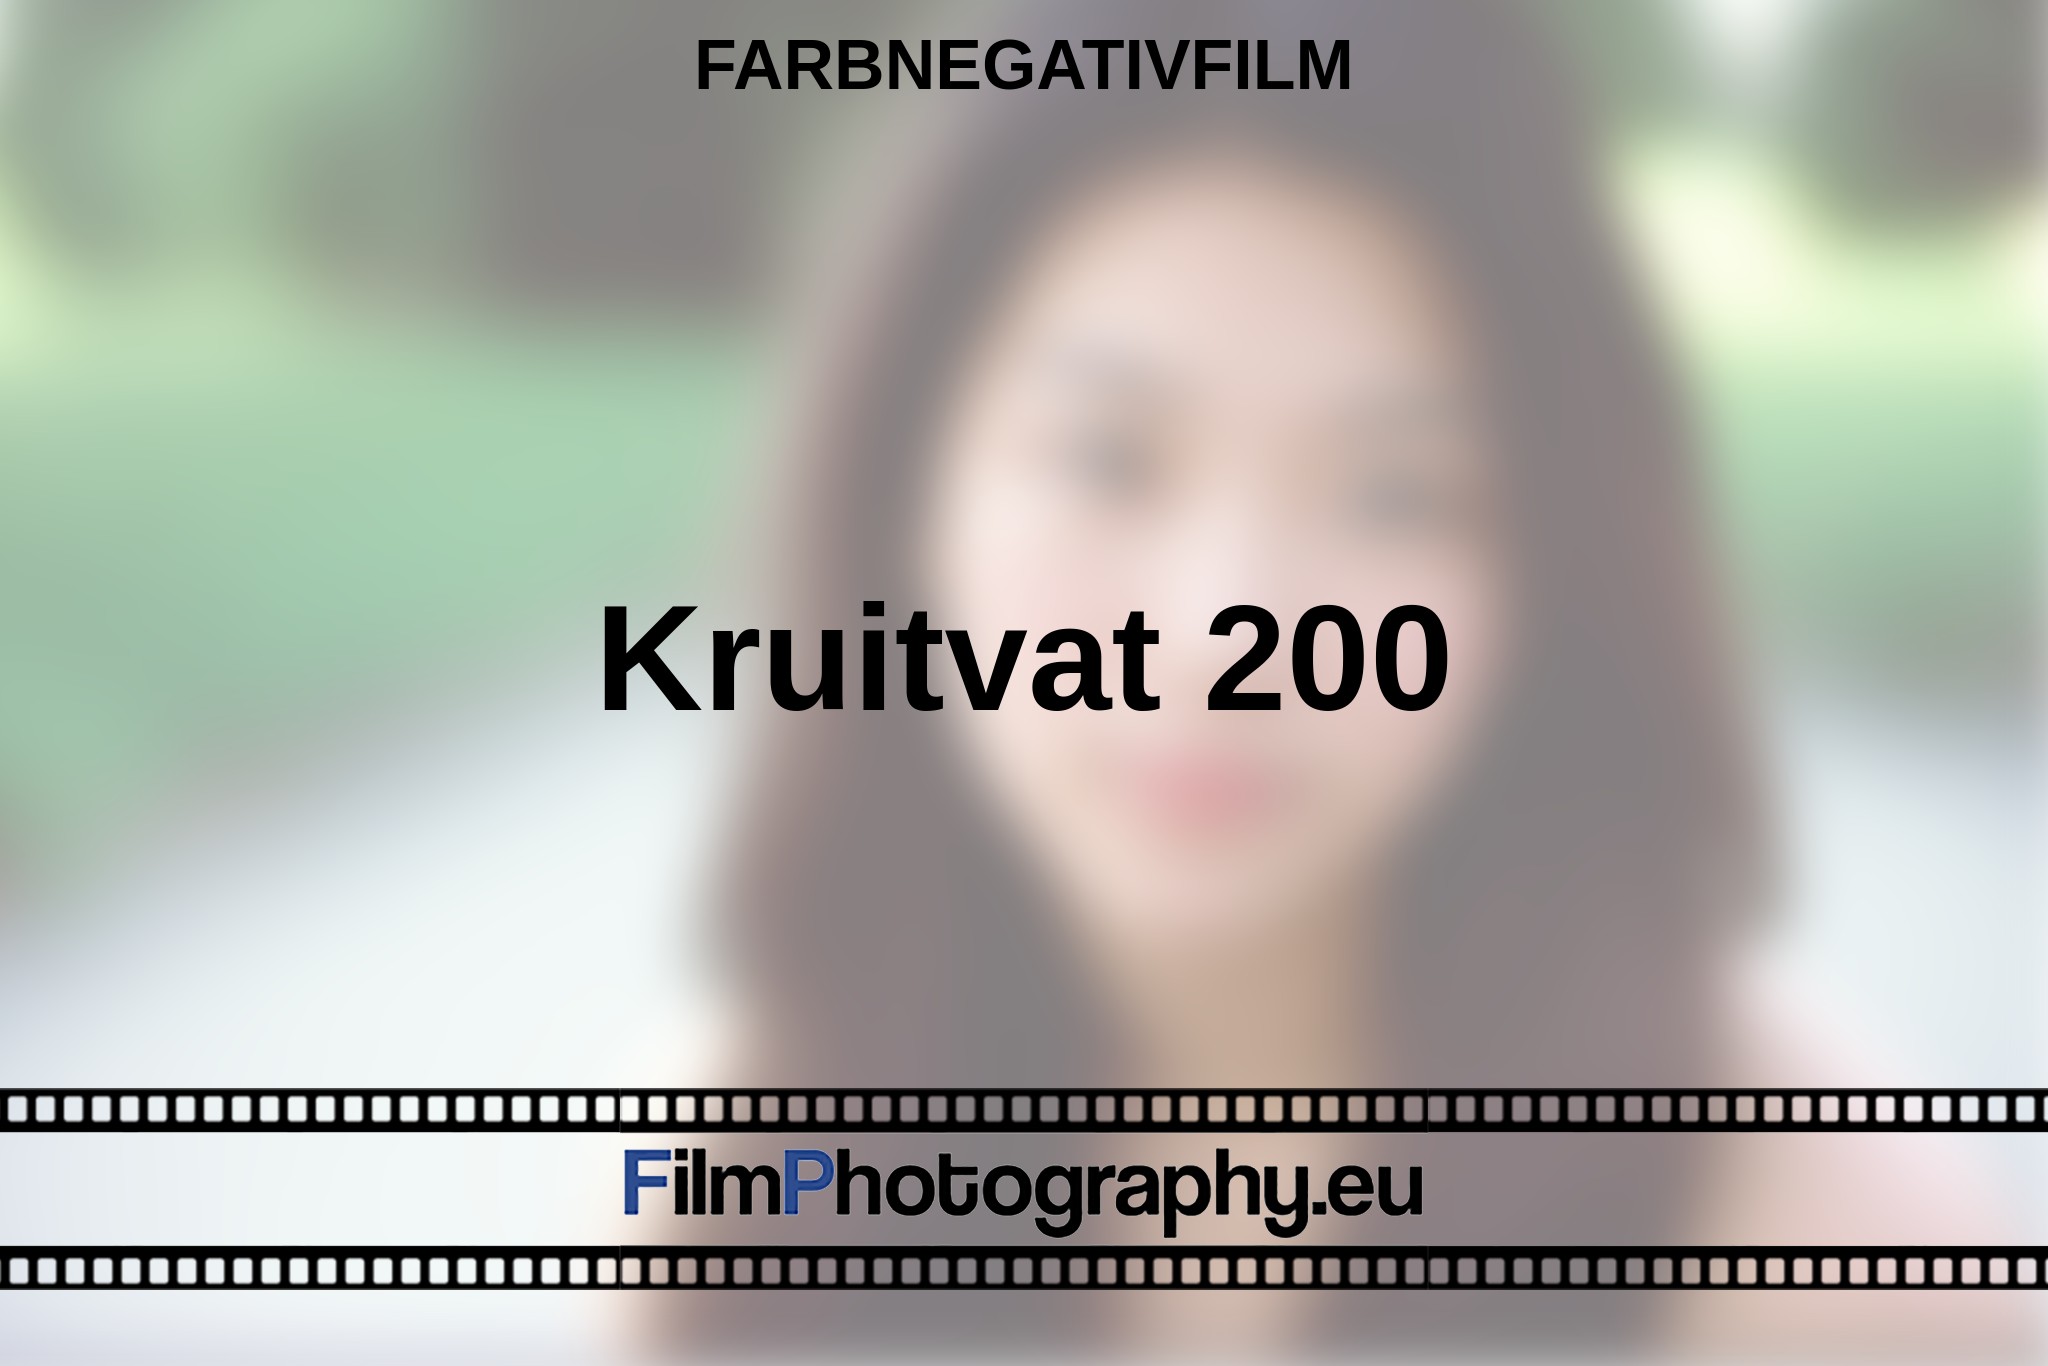 kruitvat-200-farbnegativfilm-bnv.jpg